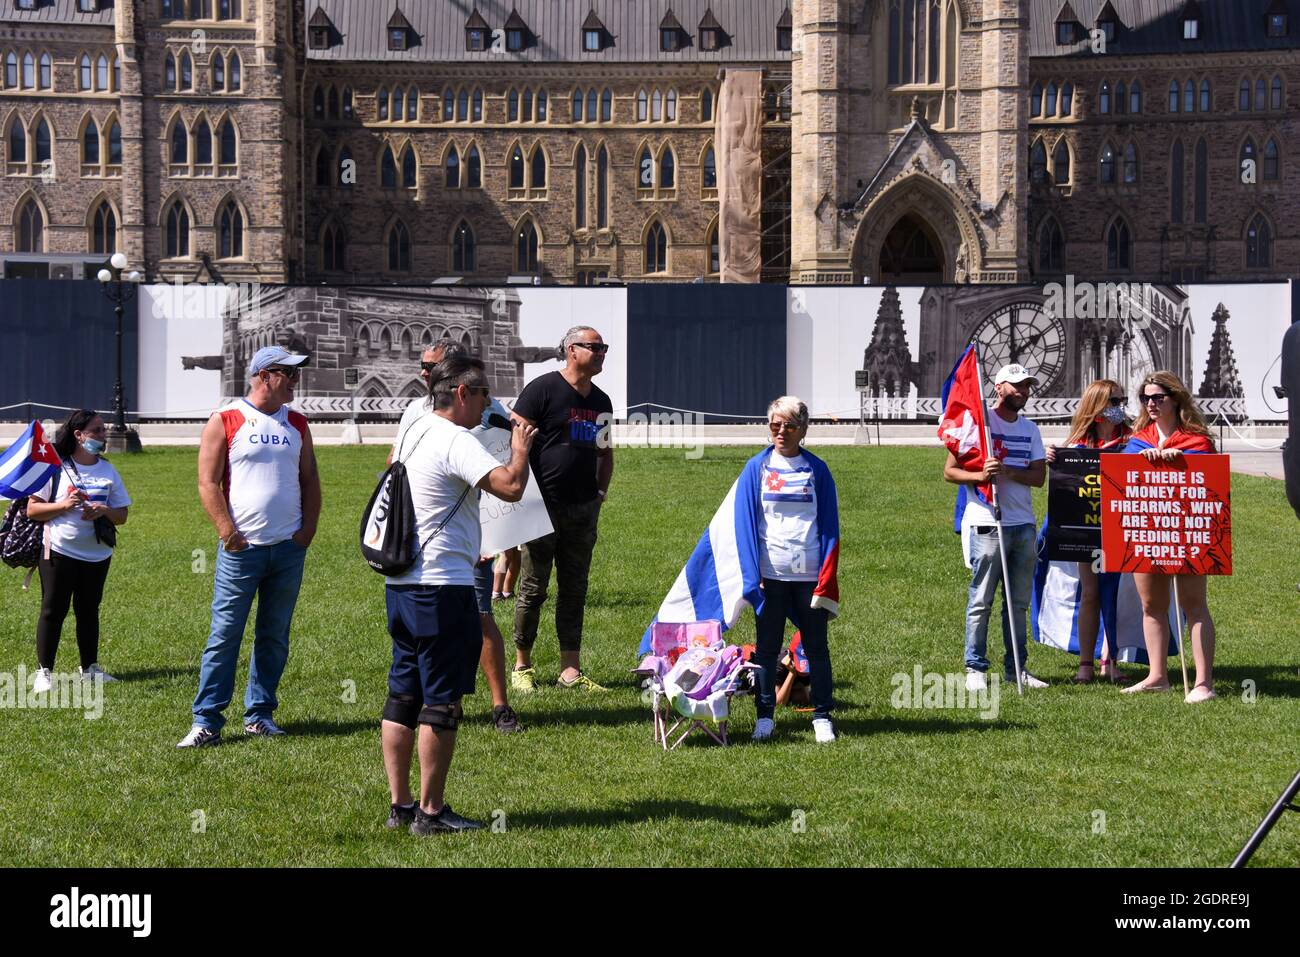 Ottawa, Canada - le 14 août 2021 : une foule se réunit sur la colline du Parlement pour protester contre la dictature à Cuba et pour appeler à une aide internationale pour les Cubains. Banque D'Images